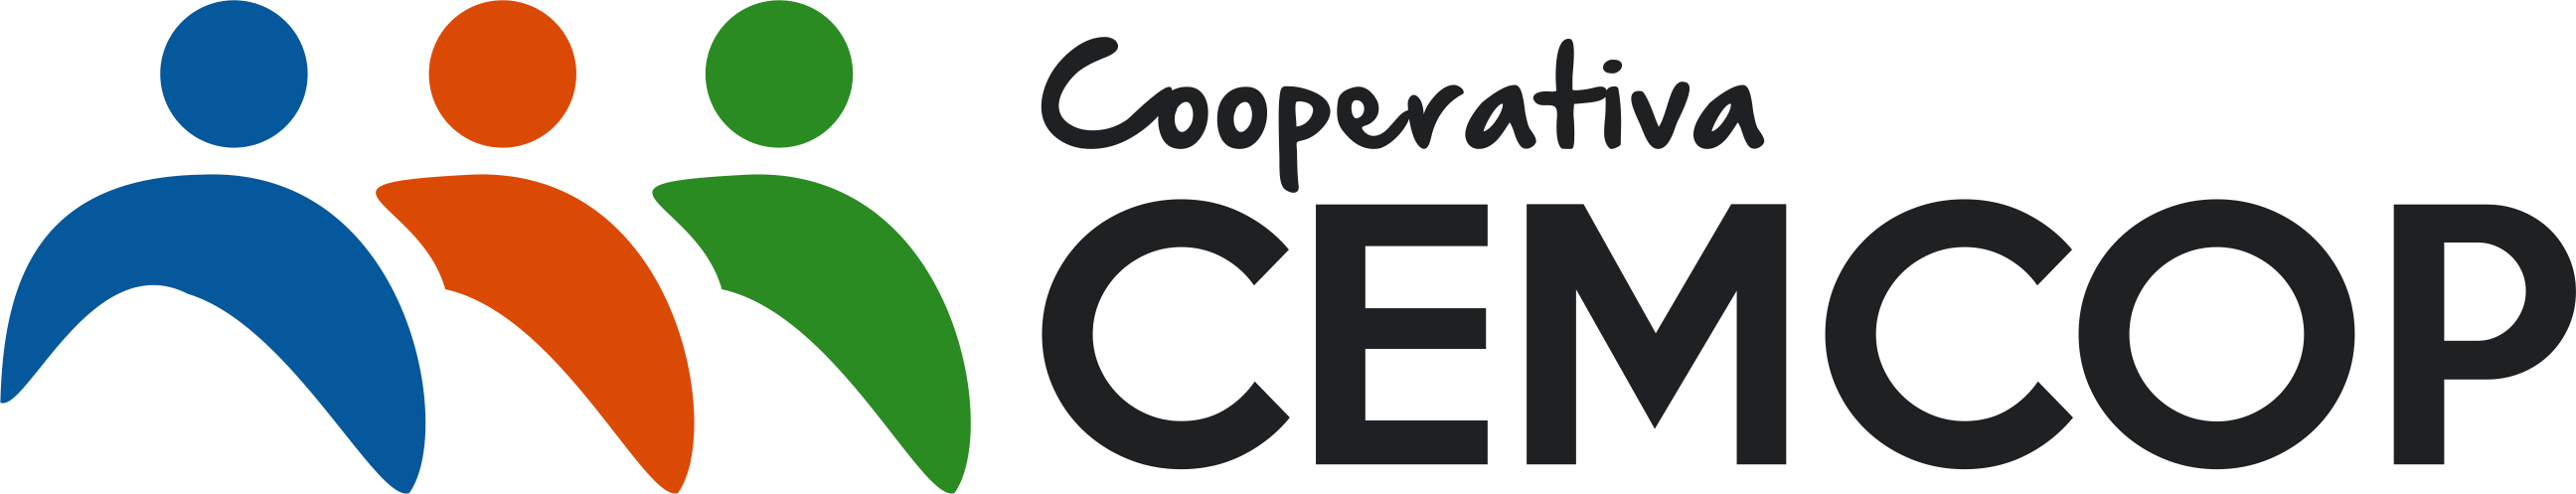 logo editable vector CEMCOP horizontal